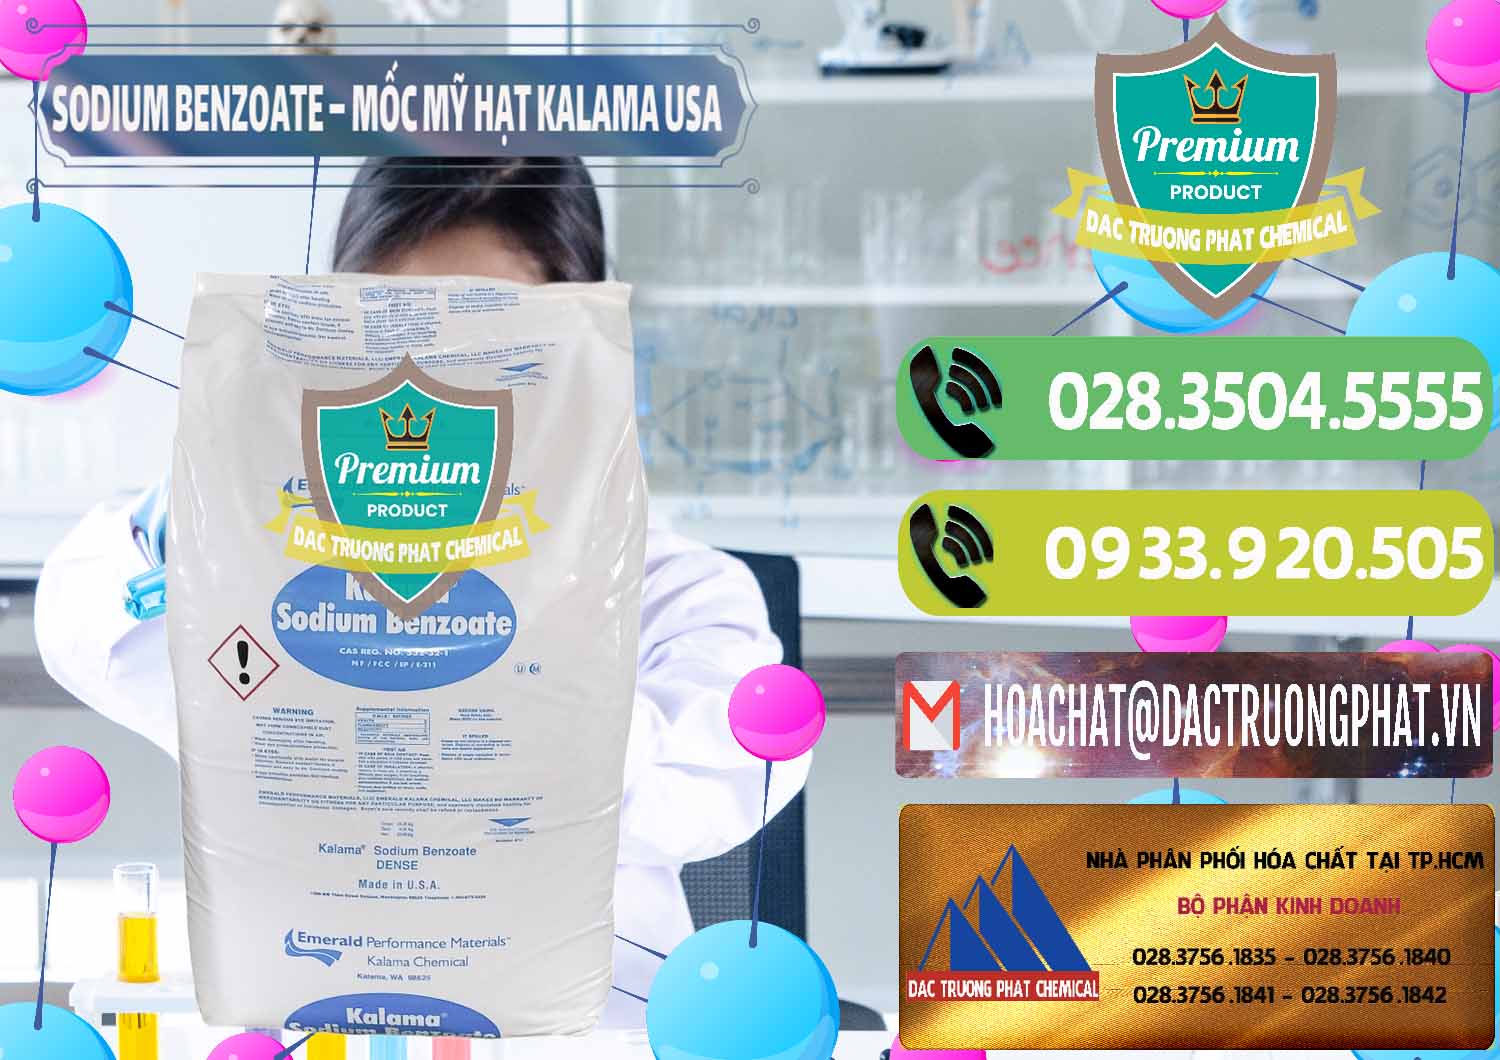 Công ty chuyên cung cấp & bán Sodium Benzoate - Mốc Hạt Kalama Food Grade Mỹ Usa - 0137 - Đơn vị chuyên bán và cung cấp hóa chất tại TP.HCM - hoachatmientay.vn